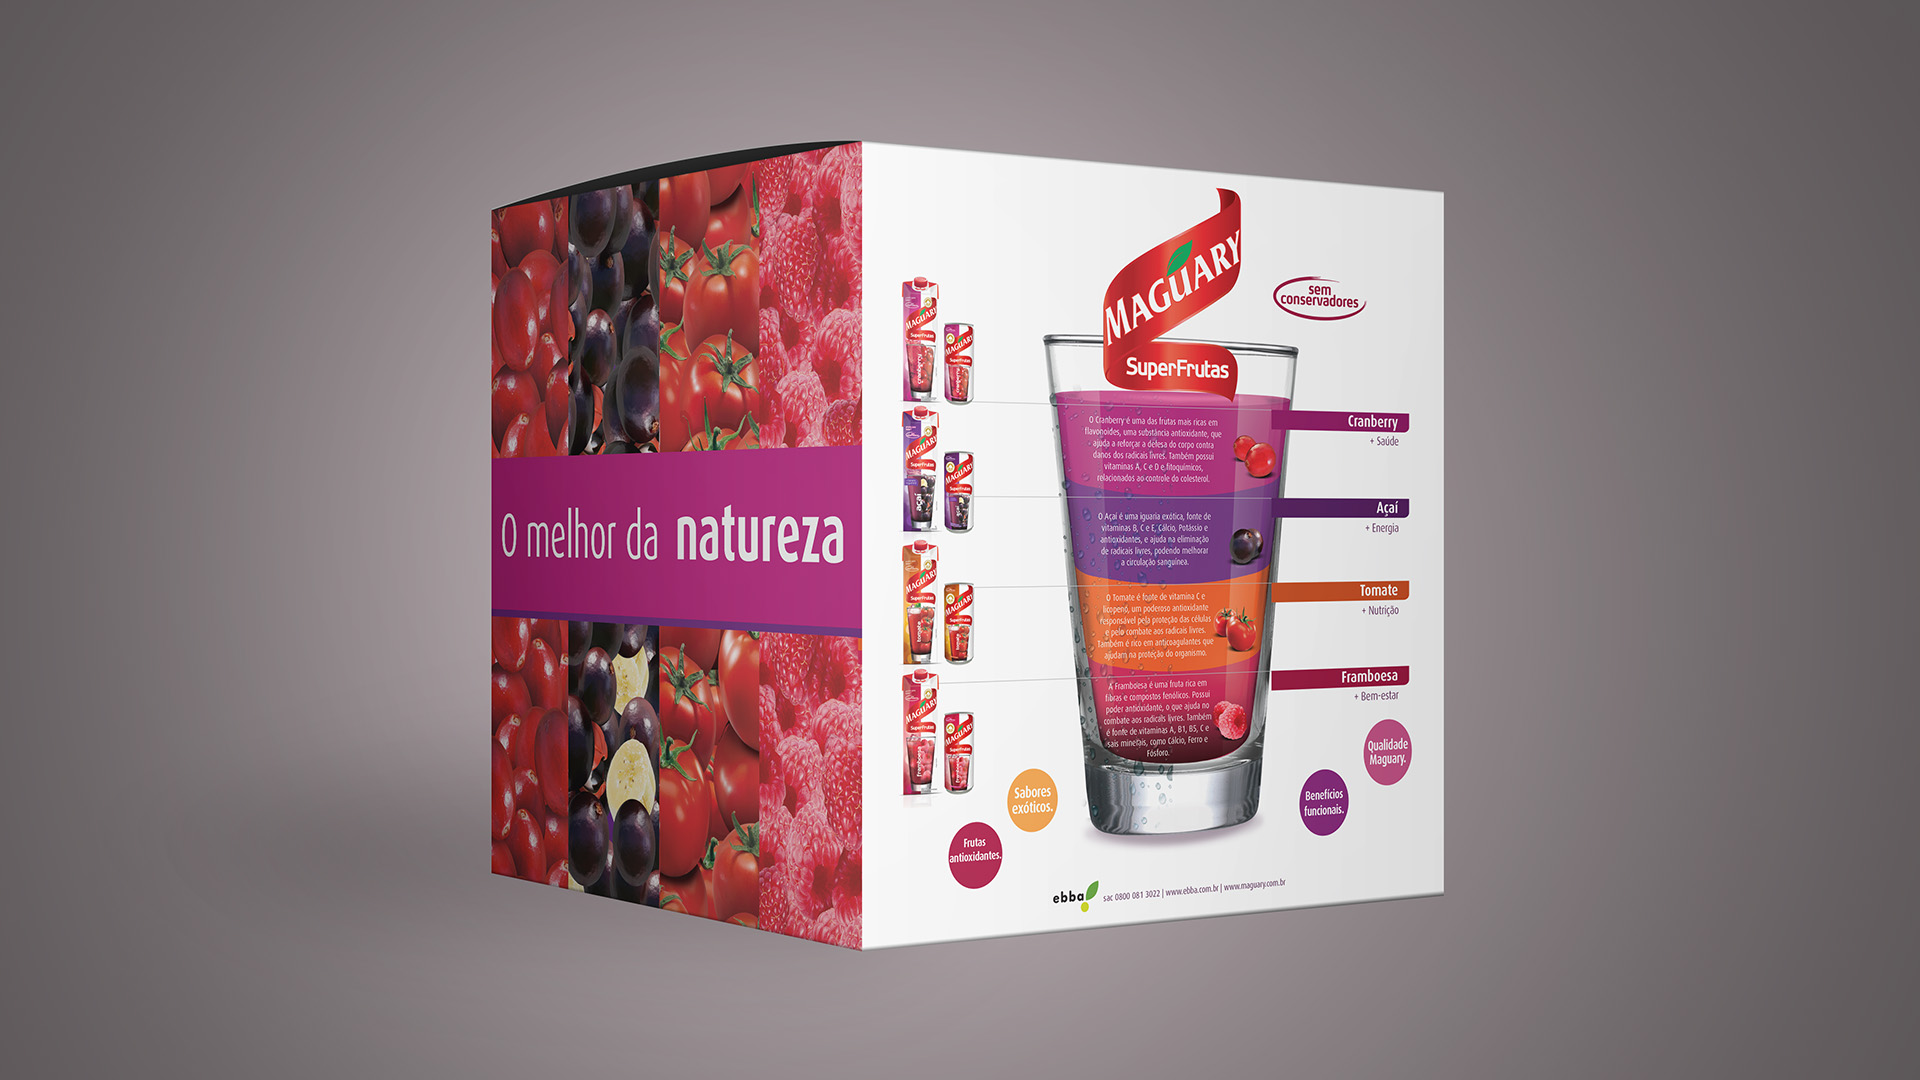 Imagem de cubo promocional com comunicação e key visual para lançamento de produtos SuperFrutas Maguary.